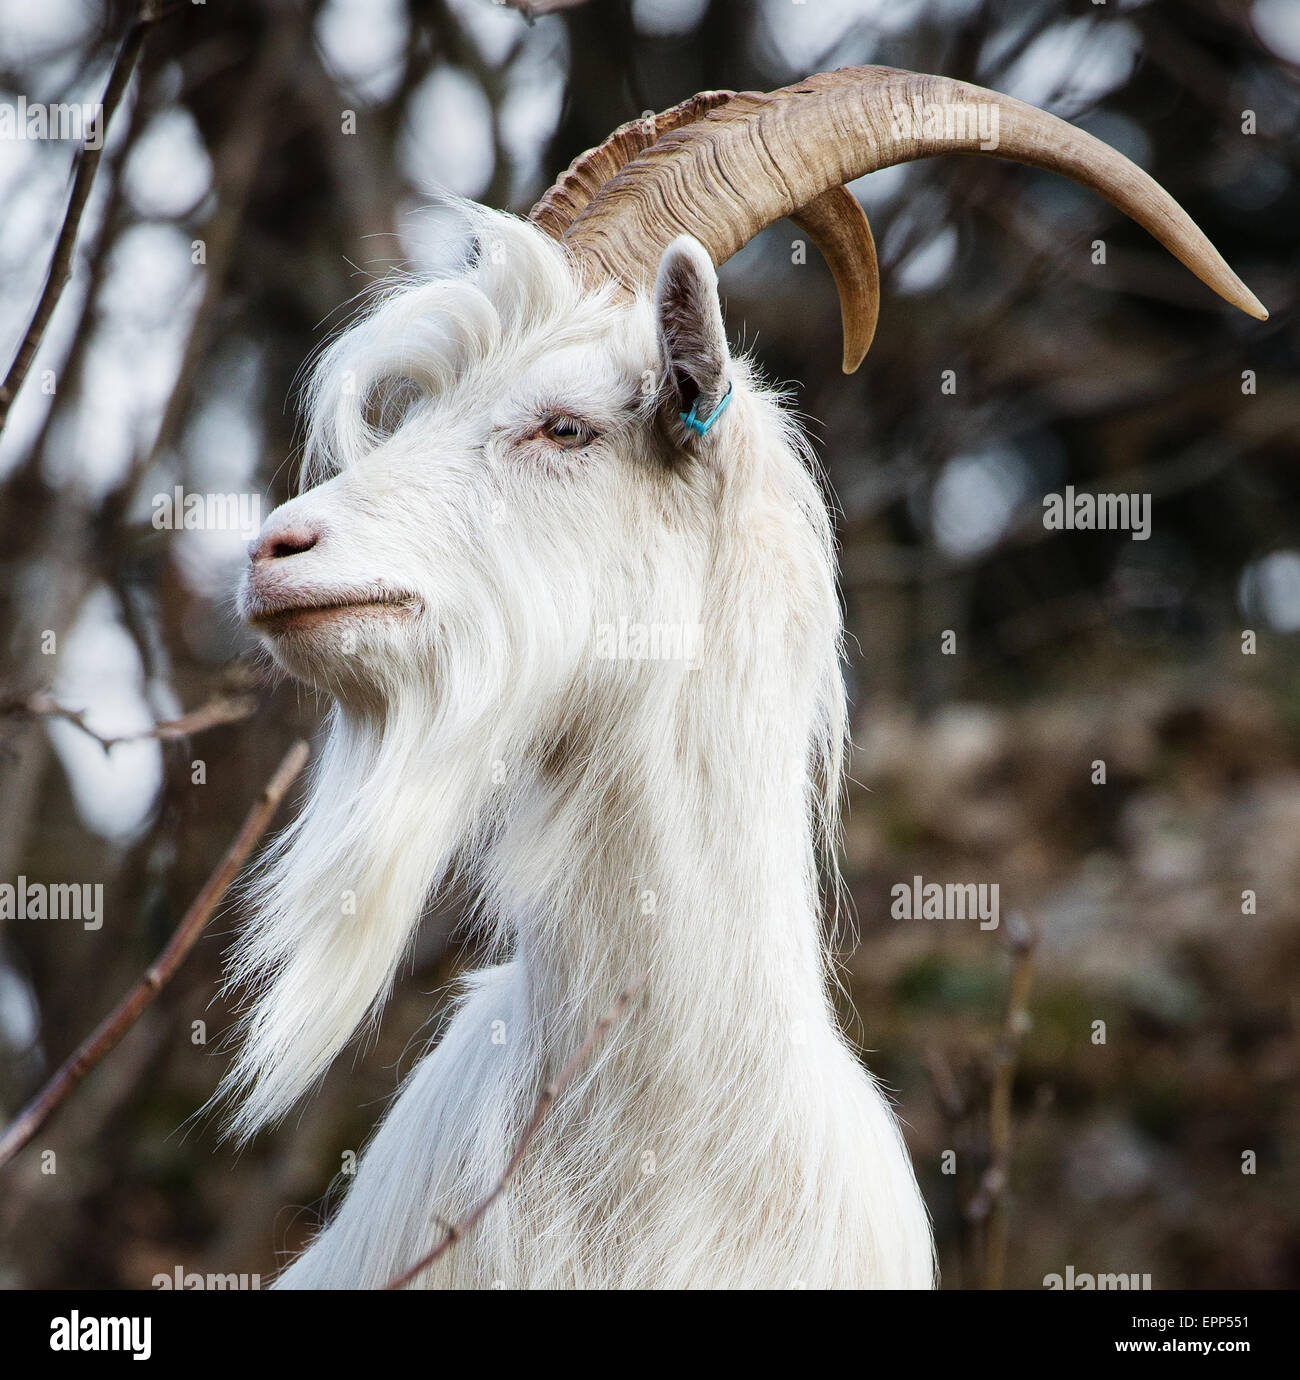 Retrato de una de las seis cabras billy introducidas en el desfiladero de Avon para controlar selectivamente el crecimiento de matorrales y fomentar la biodiversidad Foto de stock